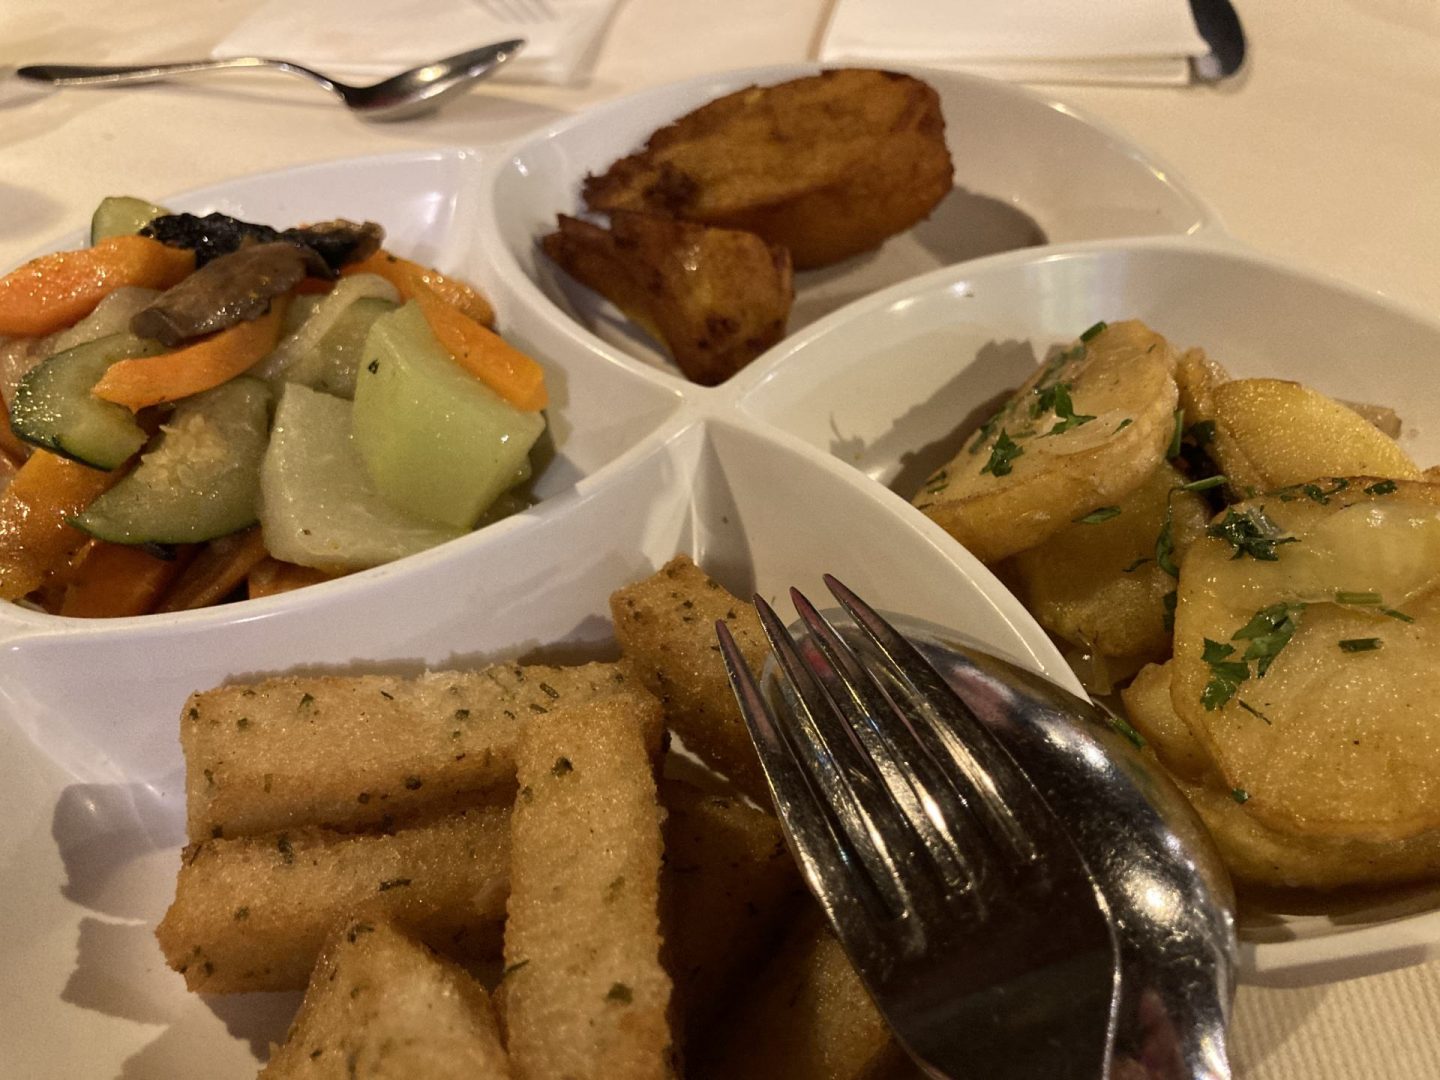 Erfahrung Bewertung Kritik Casal da Penha Funchal Madeira Beilagen Foodblog Sternestulle